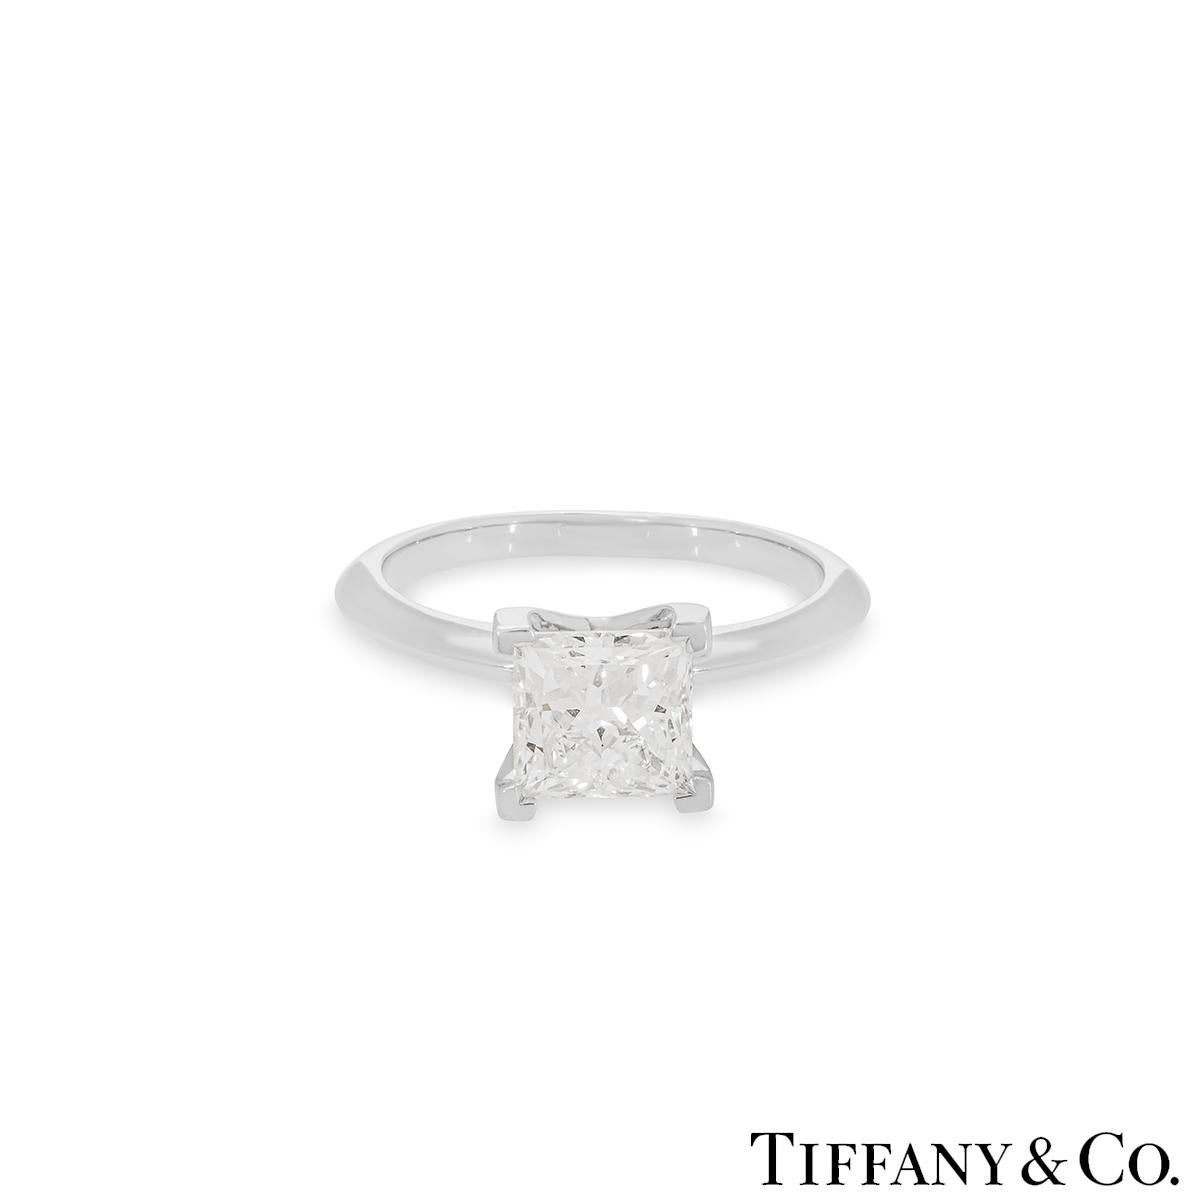 Tiffany & Co. Platin Diamantring mit Prinzessinnenschliff 2,04 Karat F/VS1 XXX (Carréschliff)